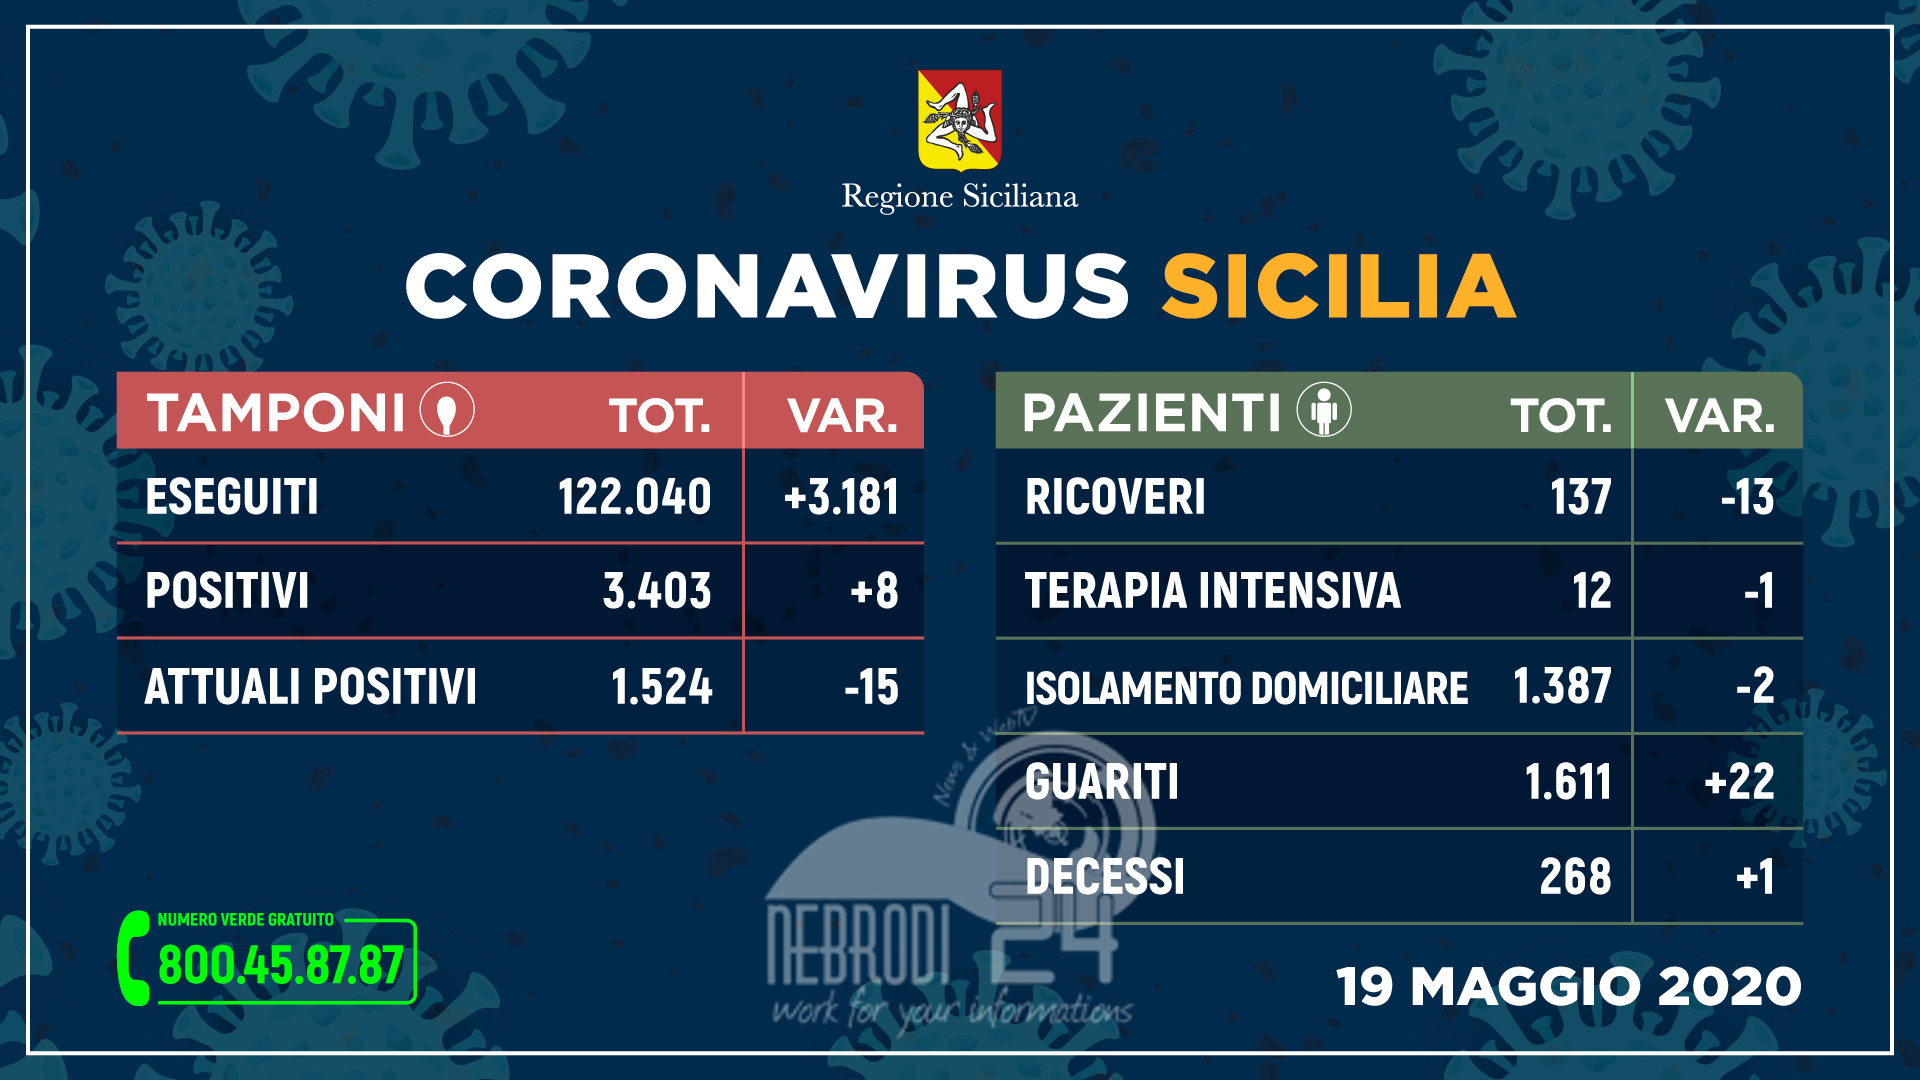 Coronavirus: sempre più guariti e meno ricoveri, 8 nuovi positivi